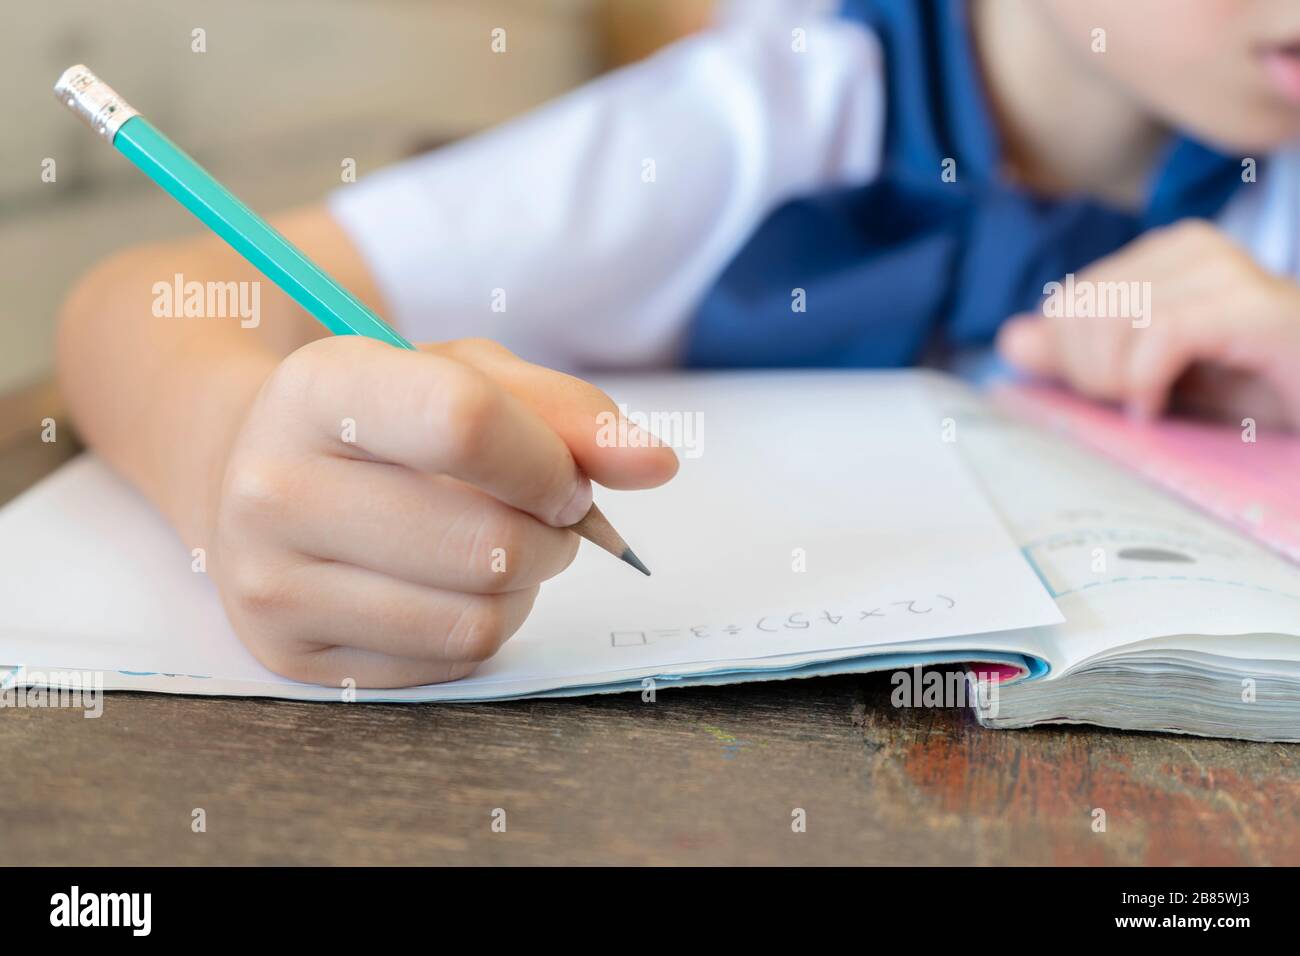 Gli studenti che tengono matite per il calcolo della matematica, seduti in classe sono interessati alla matematica. Allenamenti frequenti contribuiranno ad aumentare lo sci Foto Stock